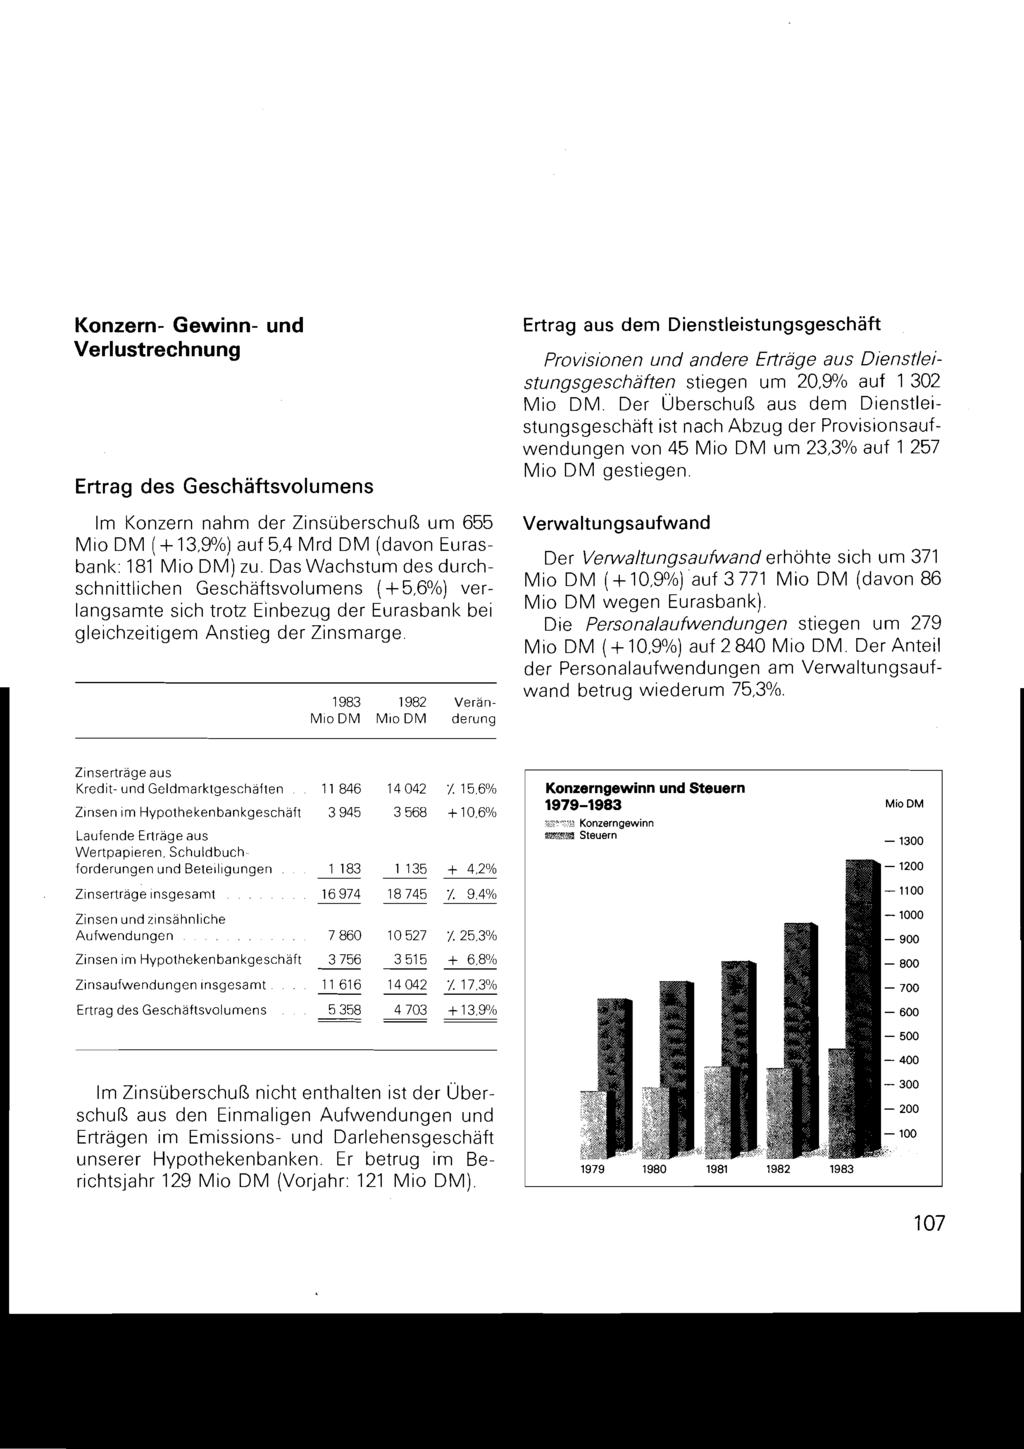 Konzern- Gewinn- und Verlustrechnung Ertrag des Geschäftsvolumens Im Konzern nahm der Zinsüberschuß um 655 Mio DM (+ 13.9%) auf 5,4 Mrd DM (davon Eurasbanl<: 181 Mio DM) zu.